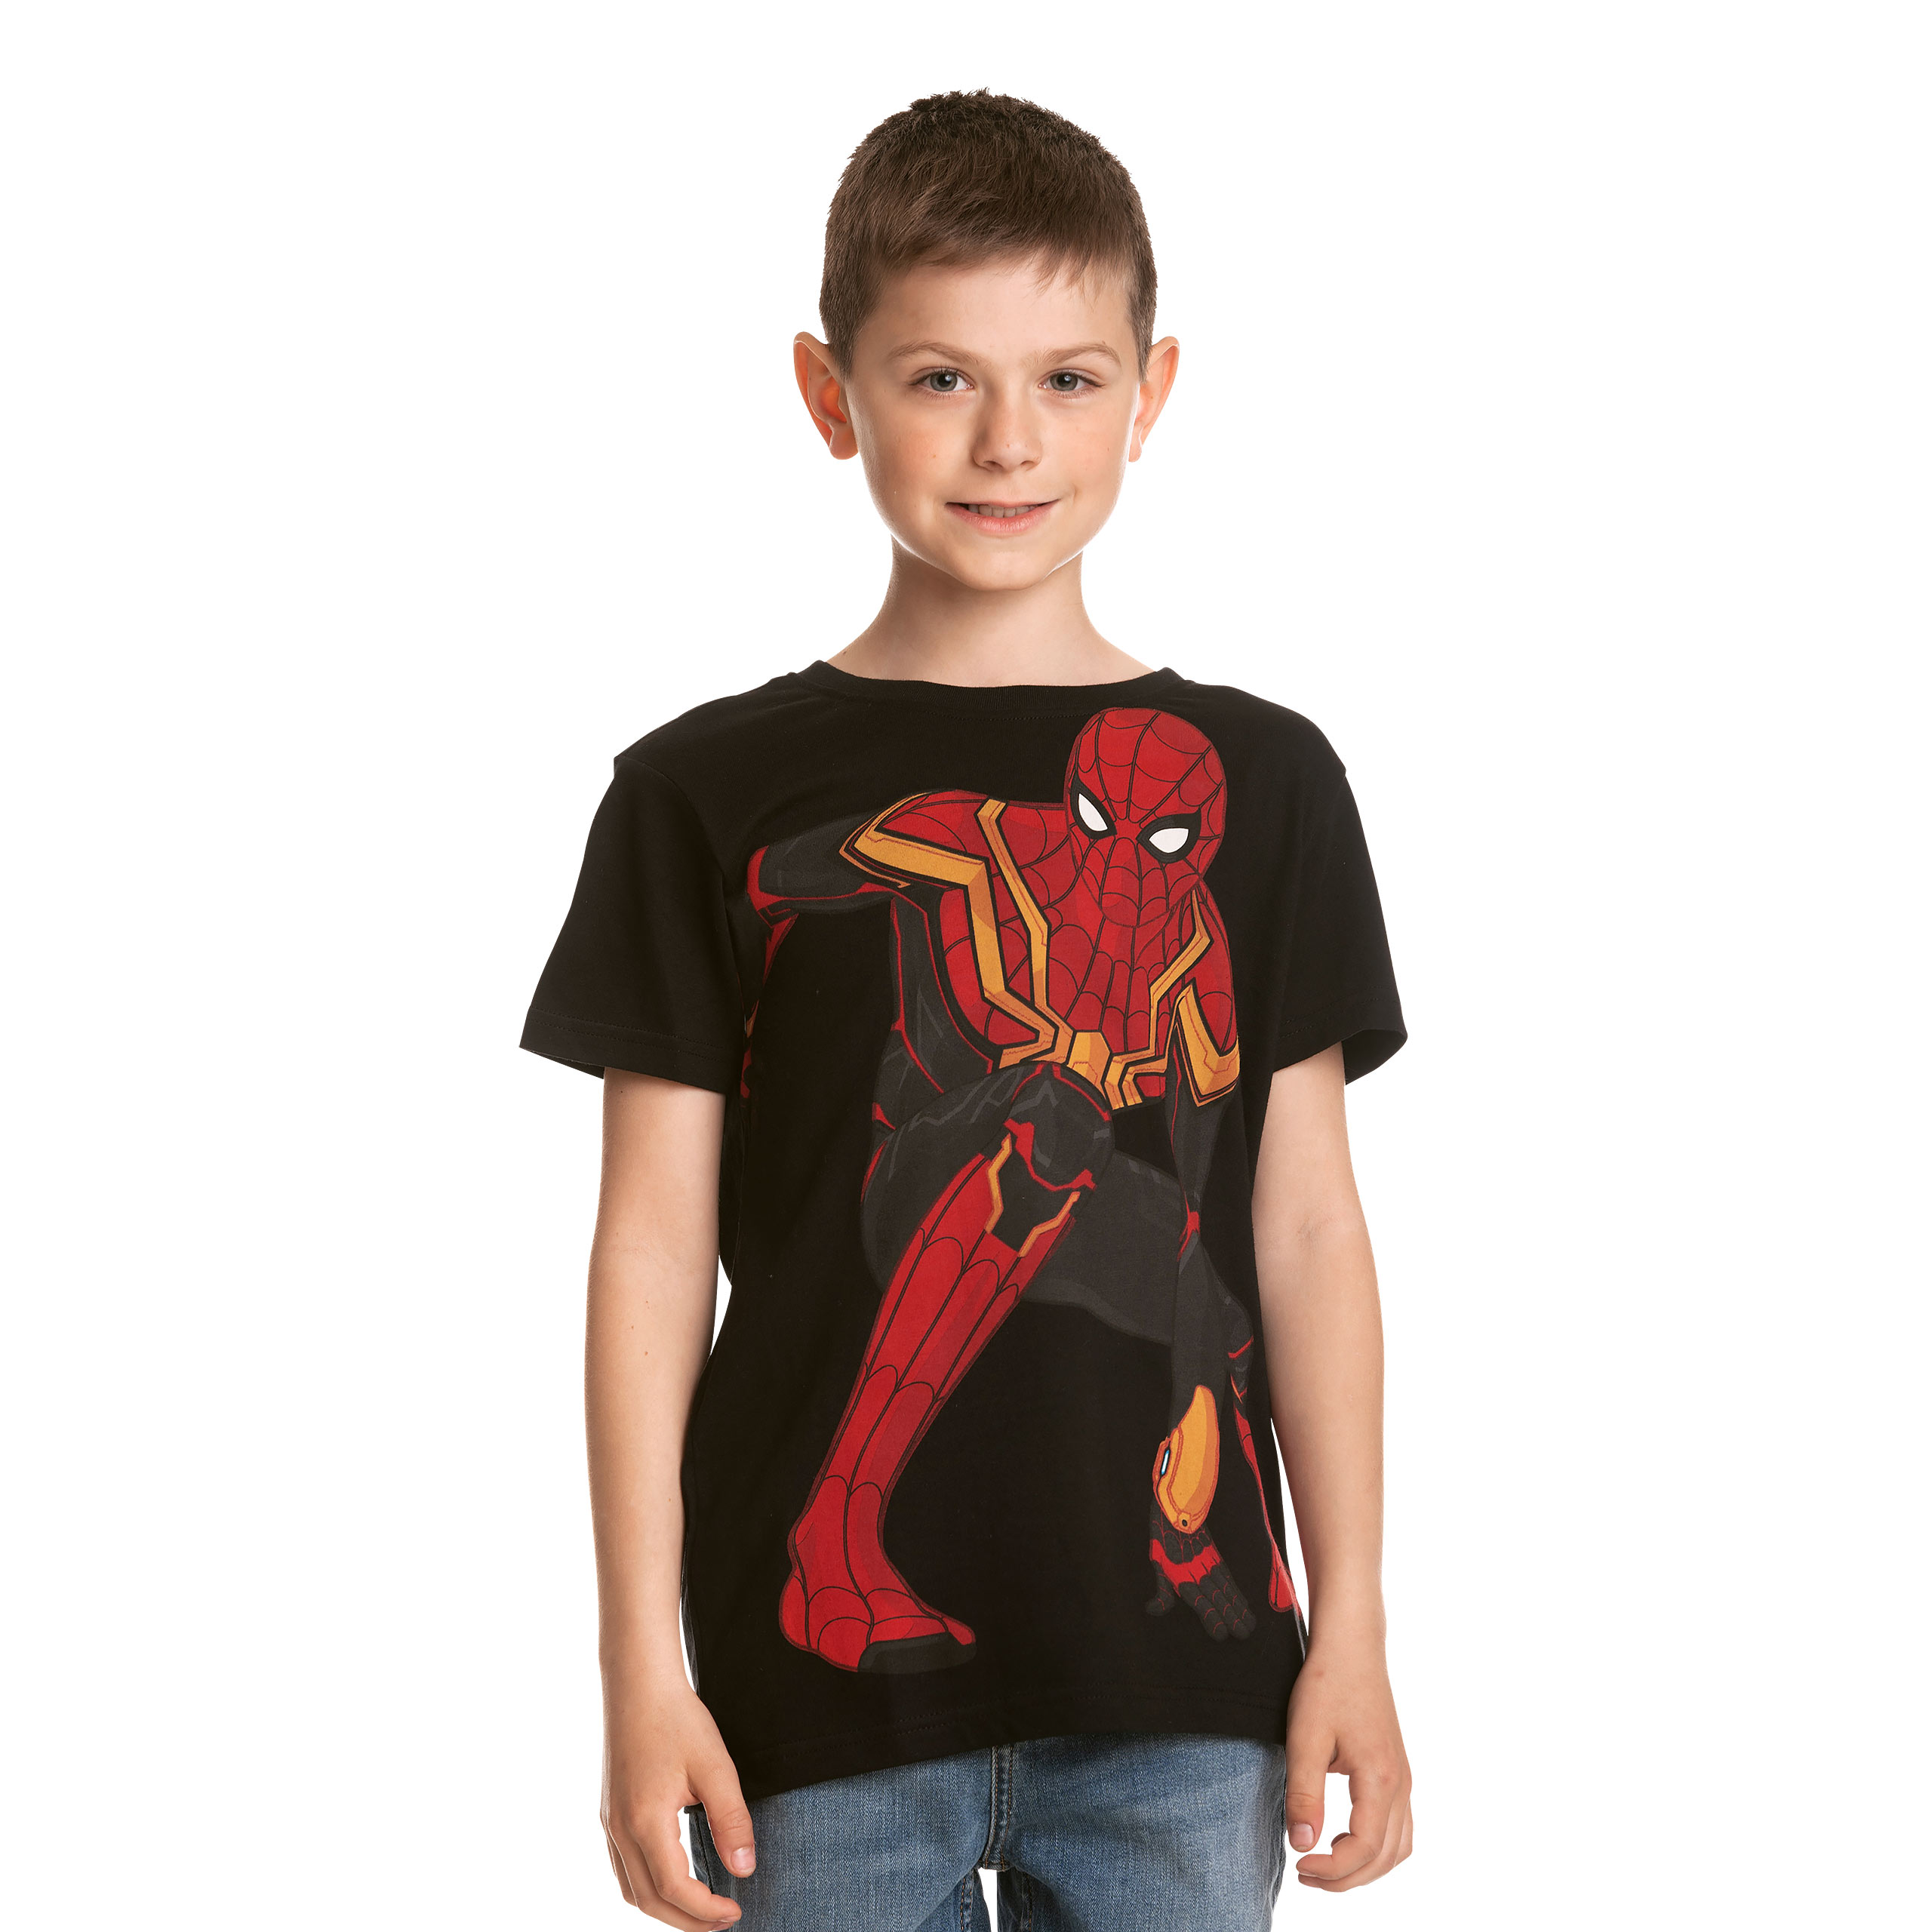 Spider-Man - Spidey Pose Children's T-Shirt Black